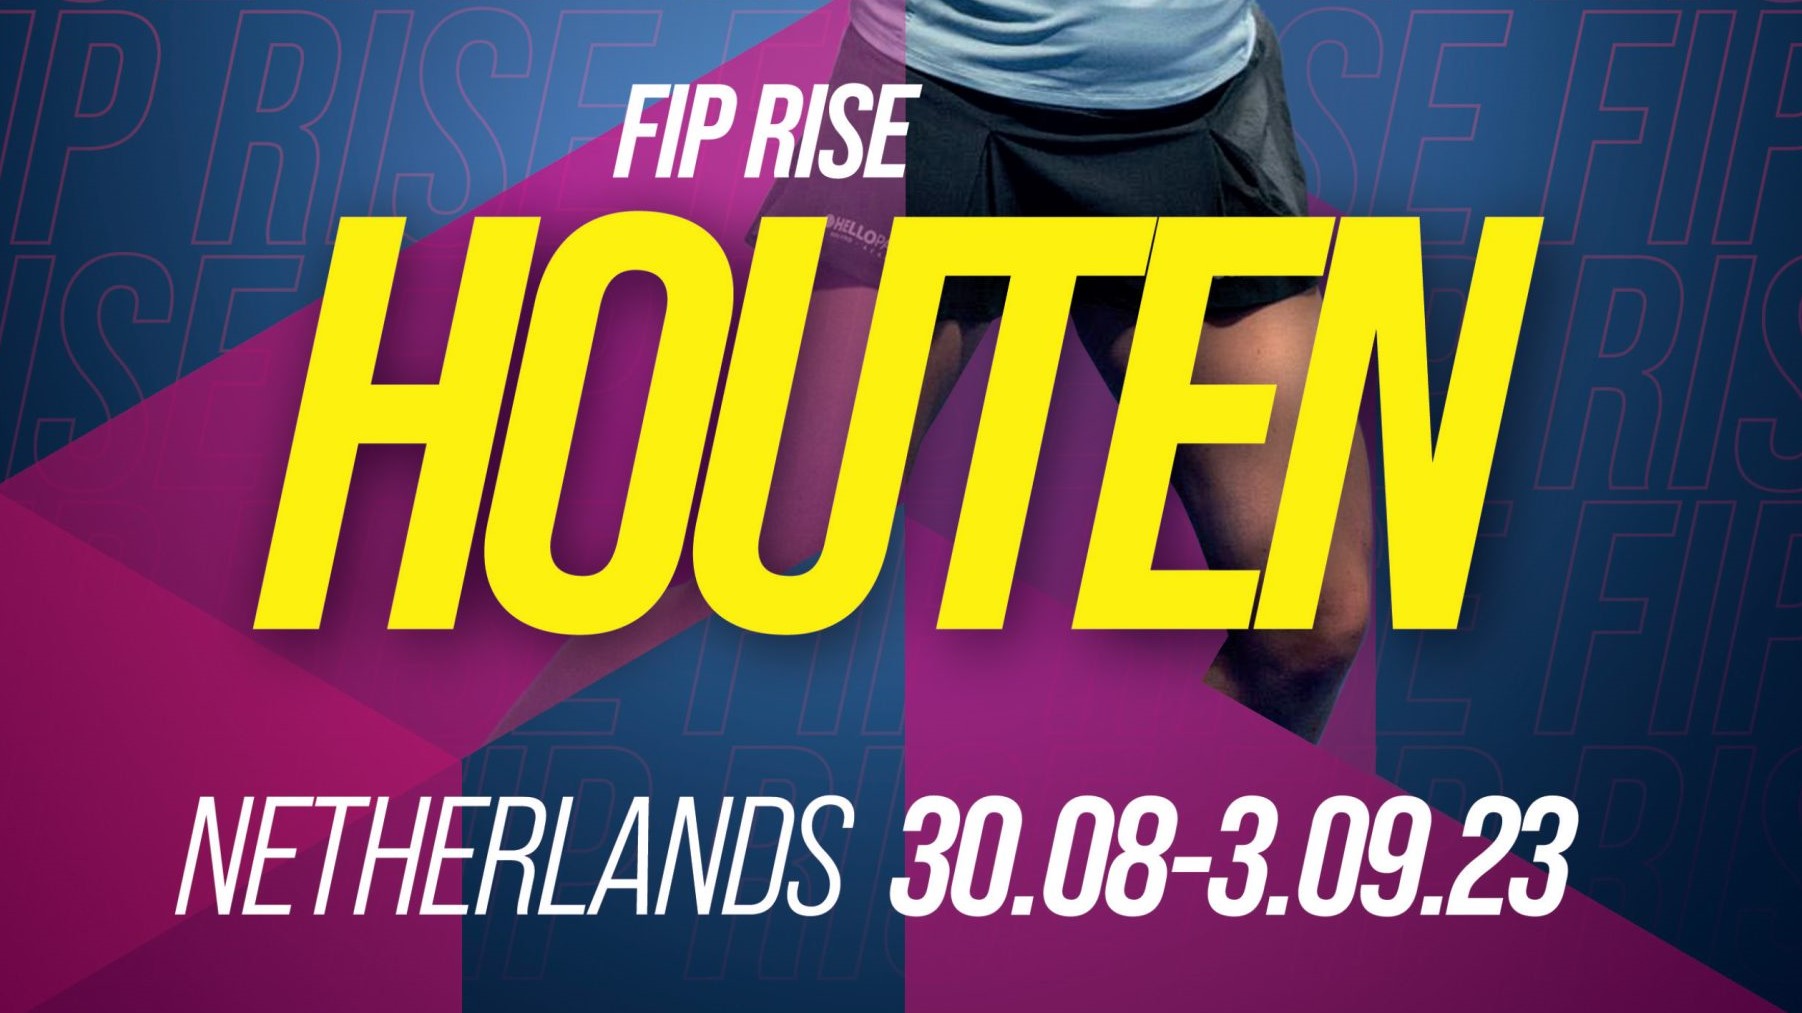 FIP rise Houten affisch 2023